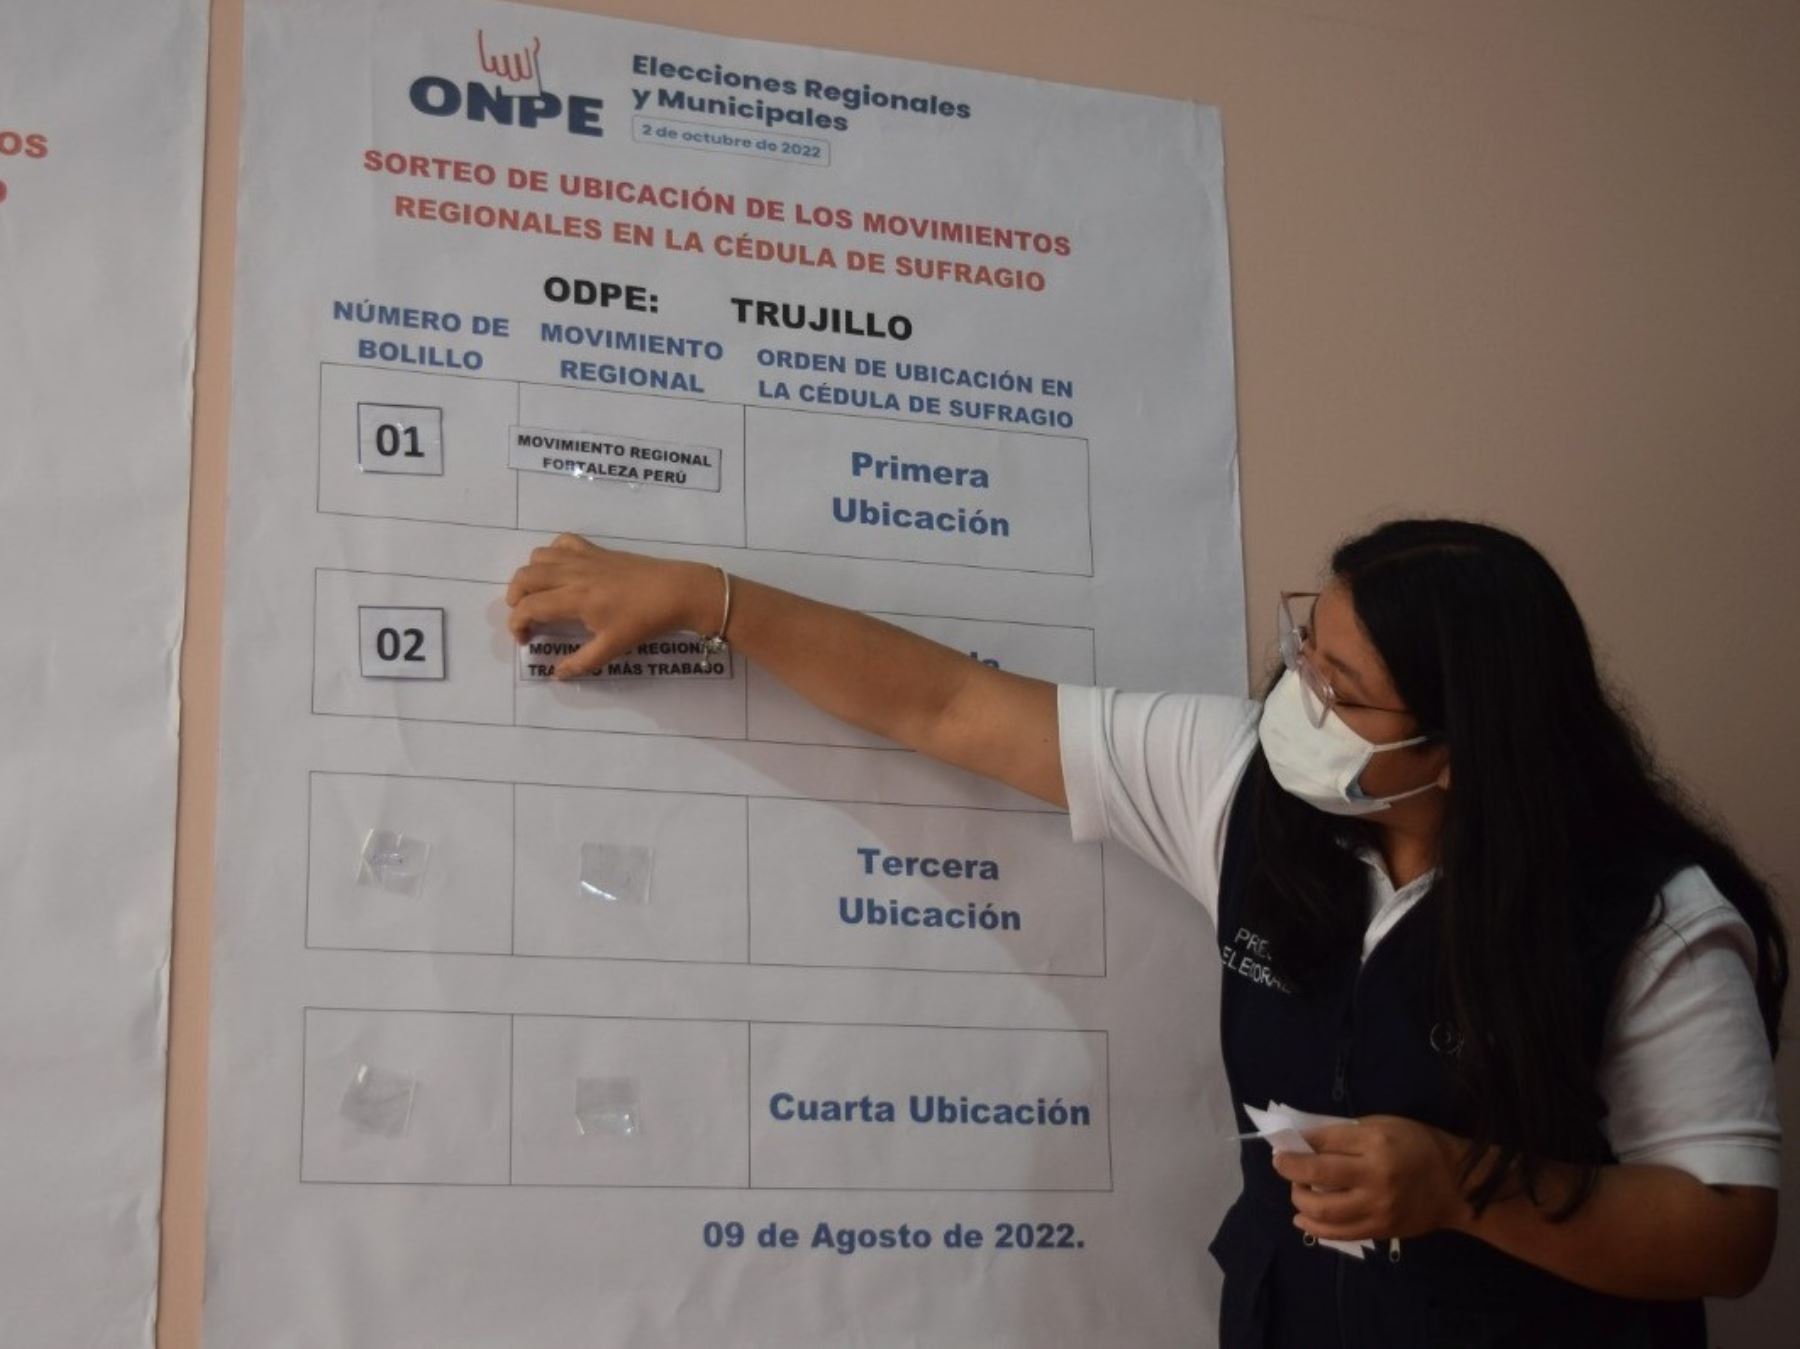 La ODPE Trujillo sorteó la ubicación de movimientos regionales en la cédula de votación que se utilizará en las elecciones regionales y municipales del 2 de octubre. Foto: Luis Puell.